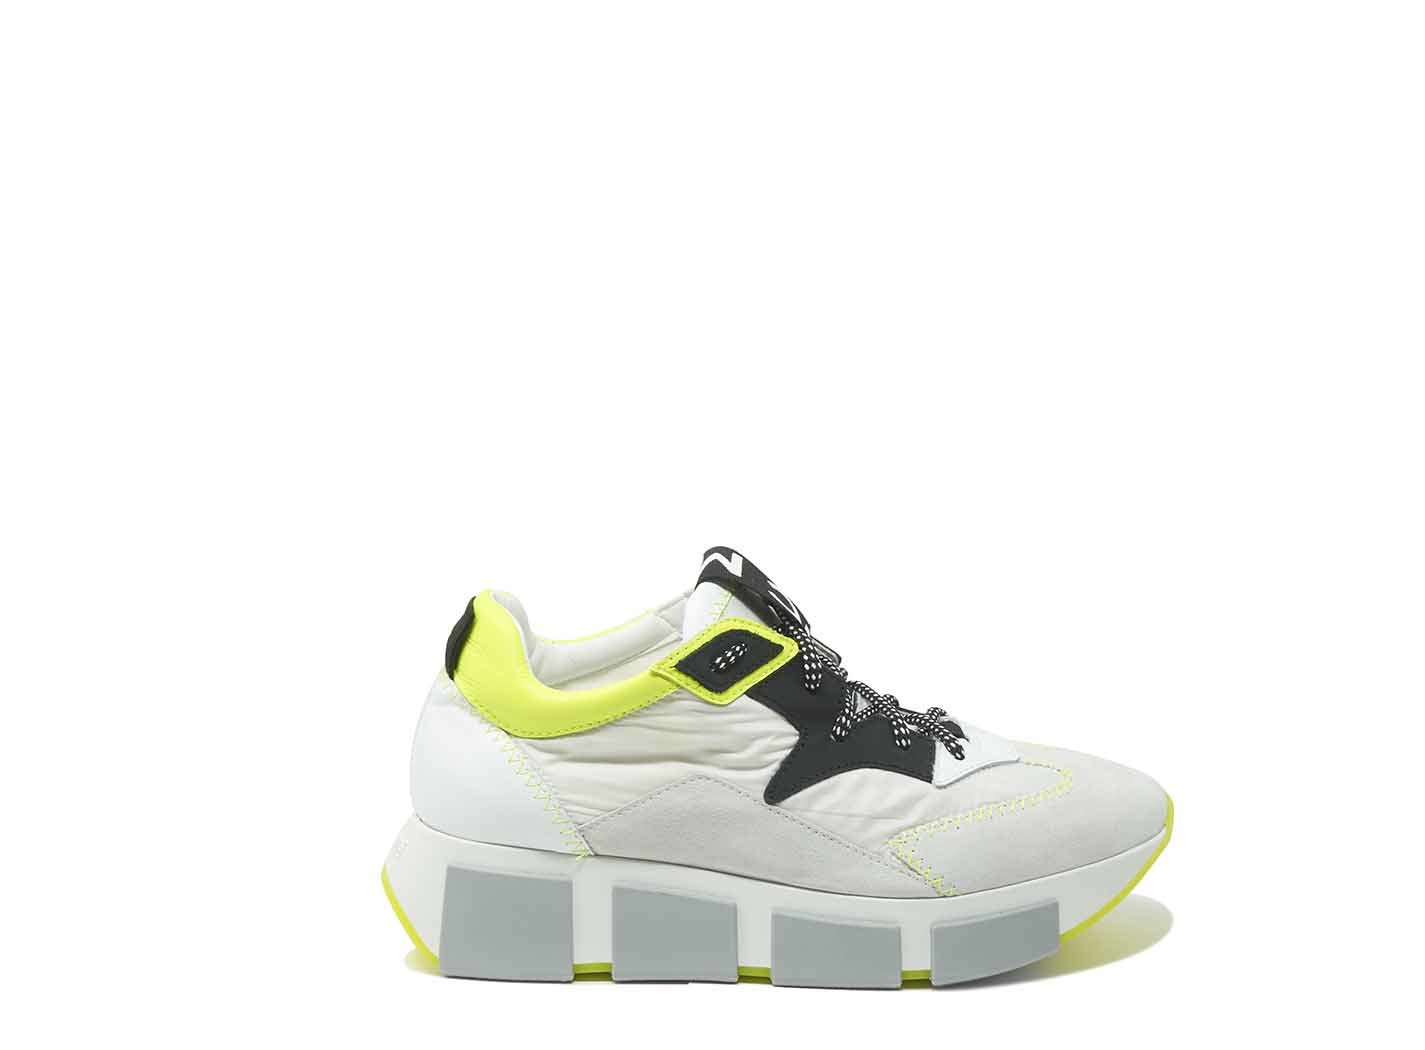 neon yellow running shoes